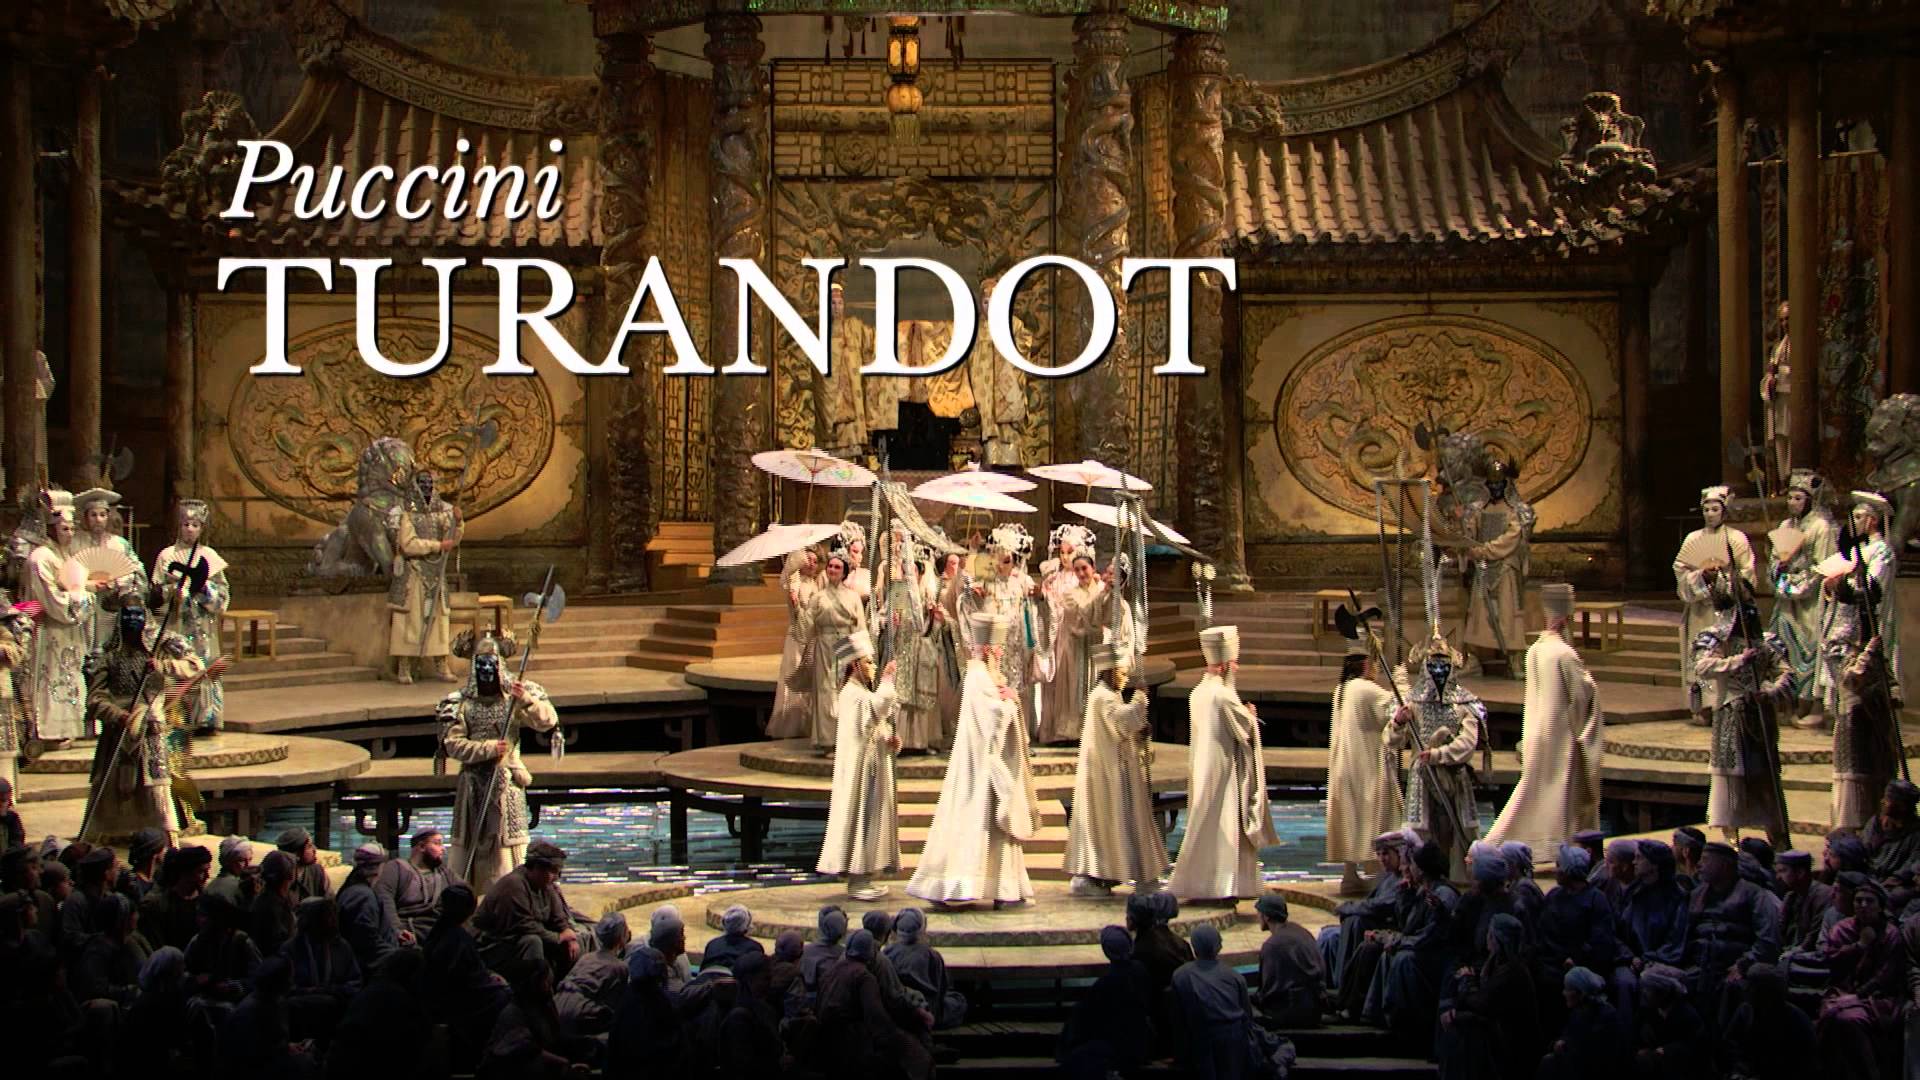 Opéra de Puccini, au théâtre 30 Janvier 2016